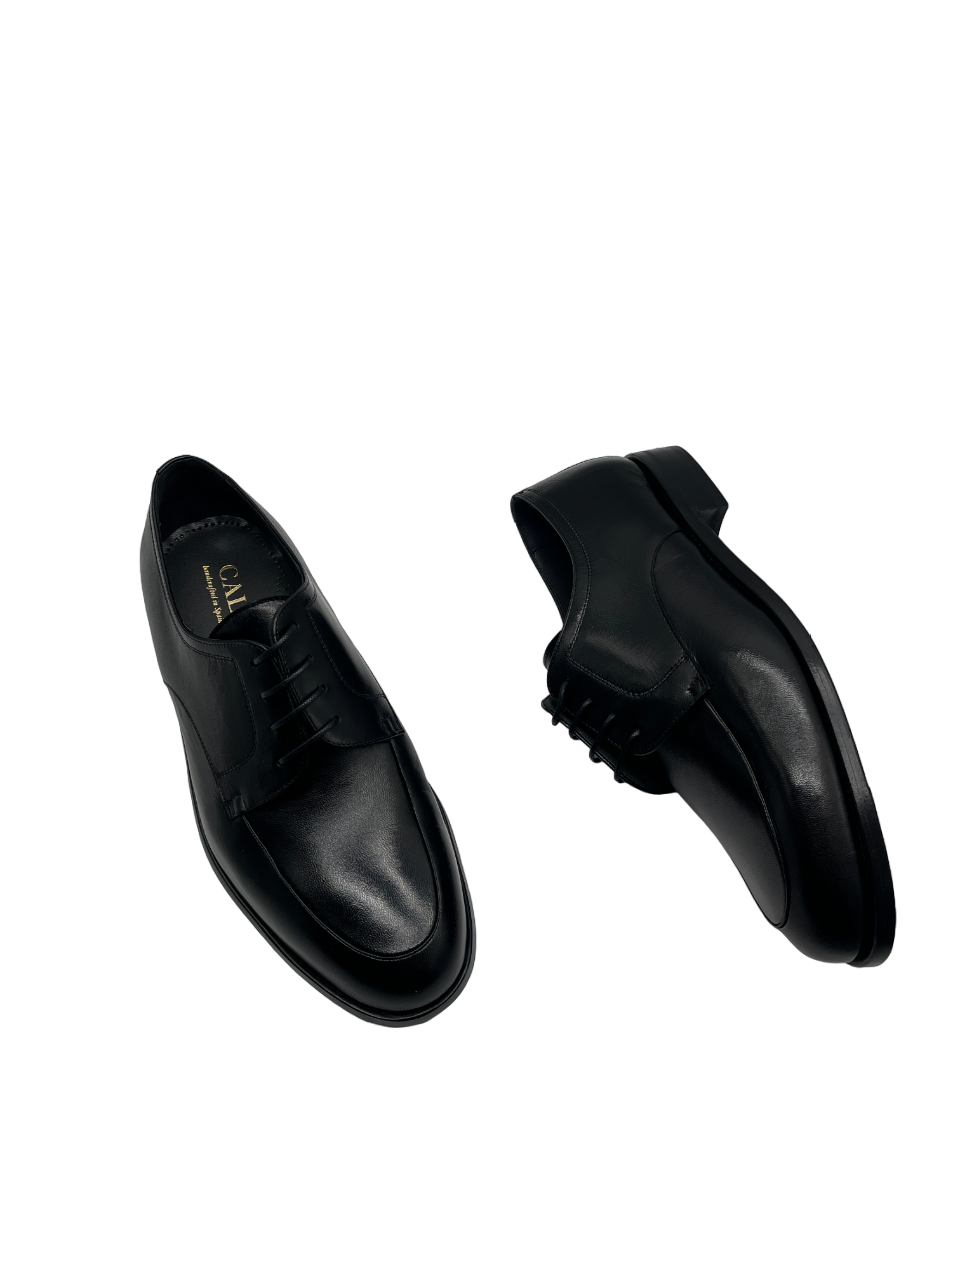 Calce 3501 Black 35 A/11 Lace Shoes